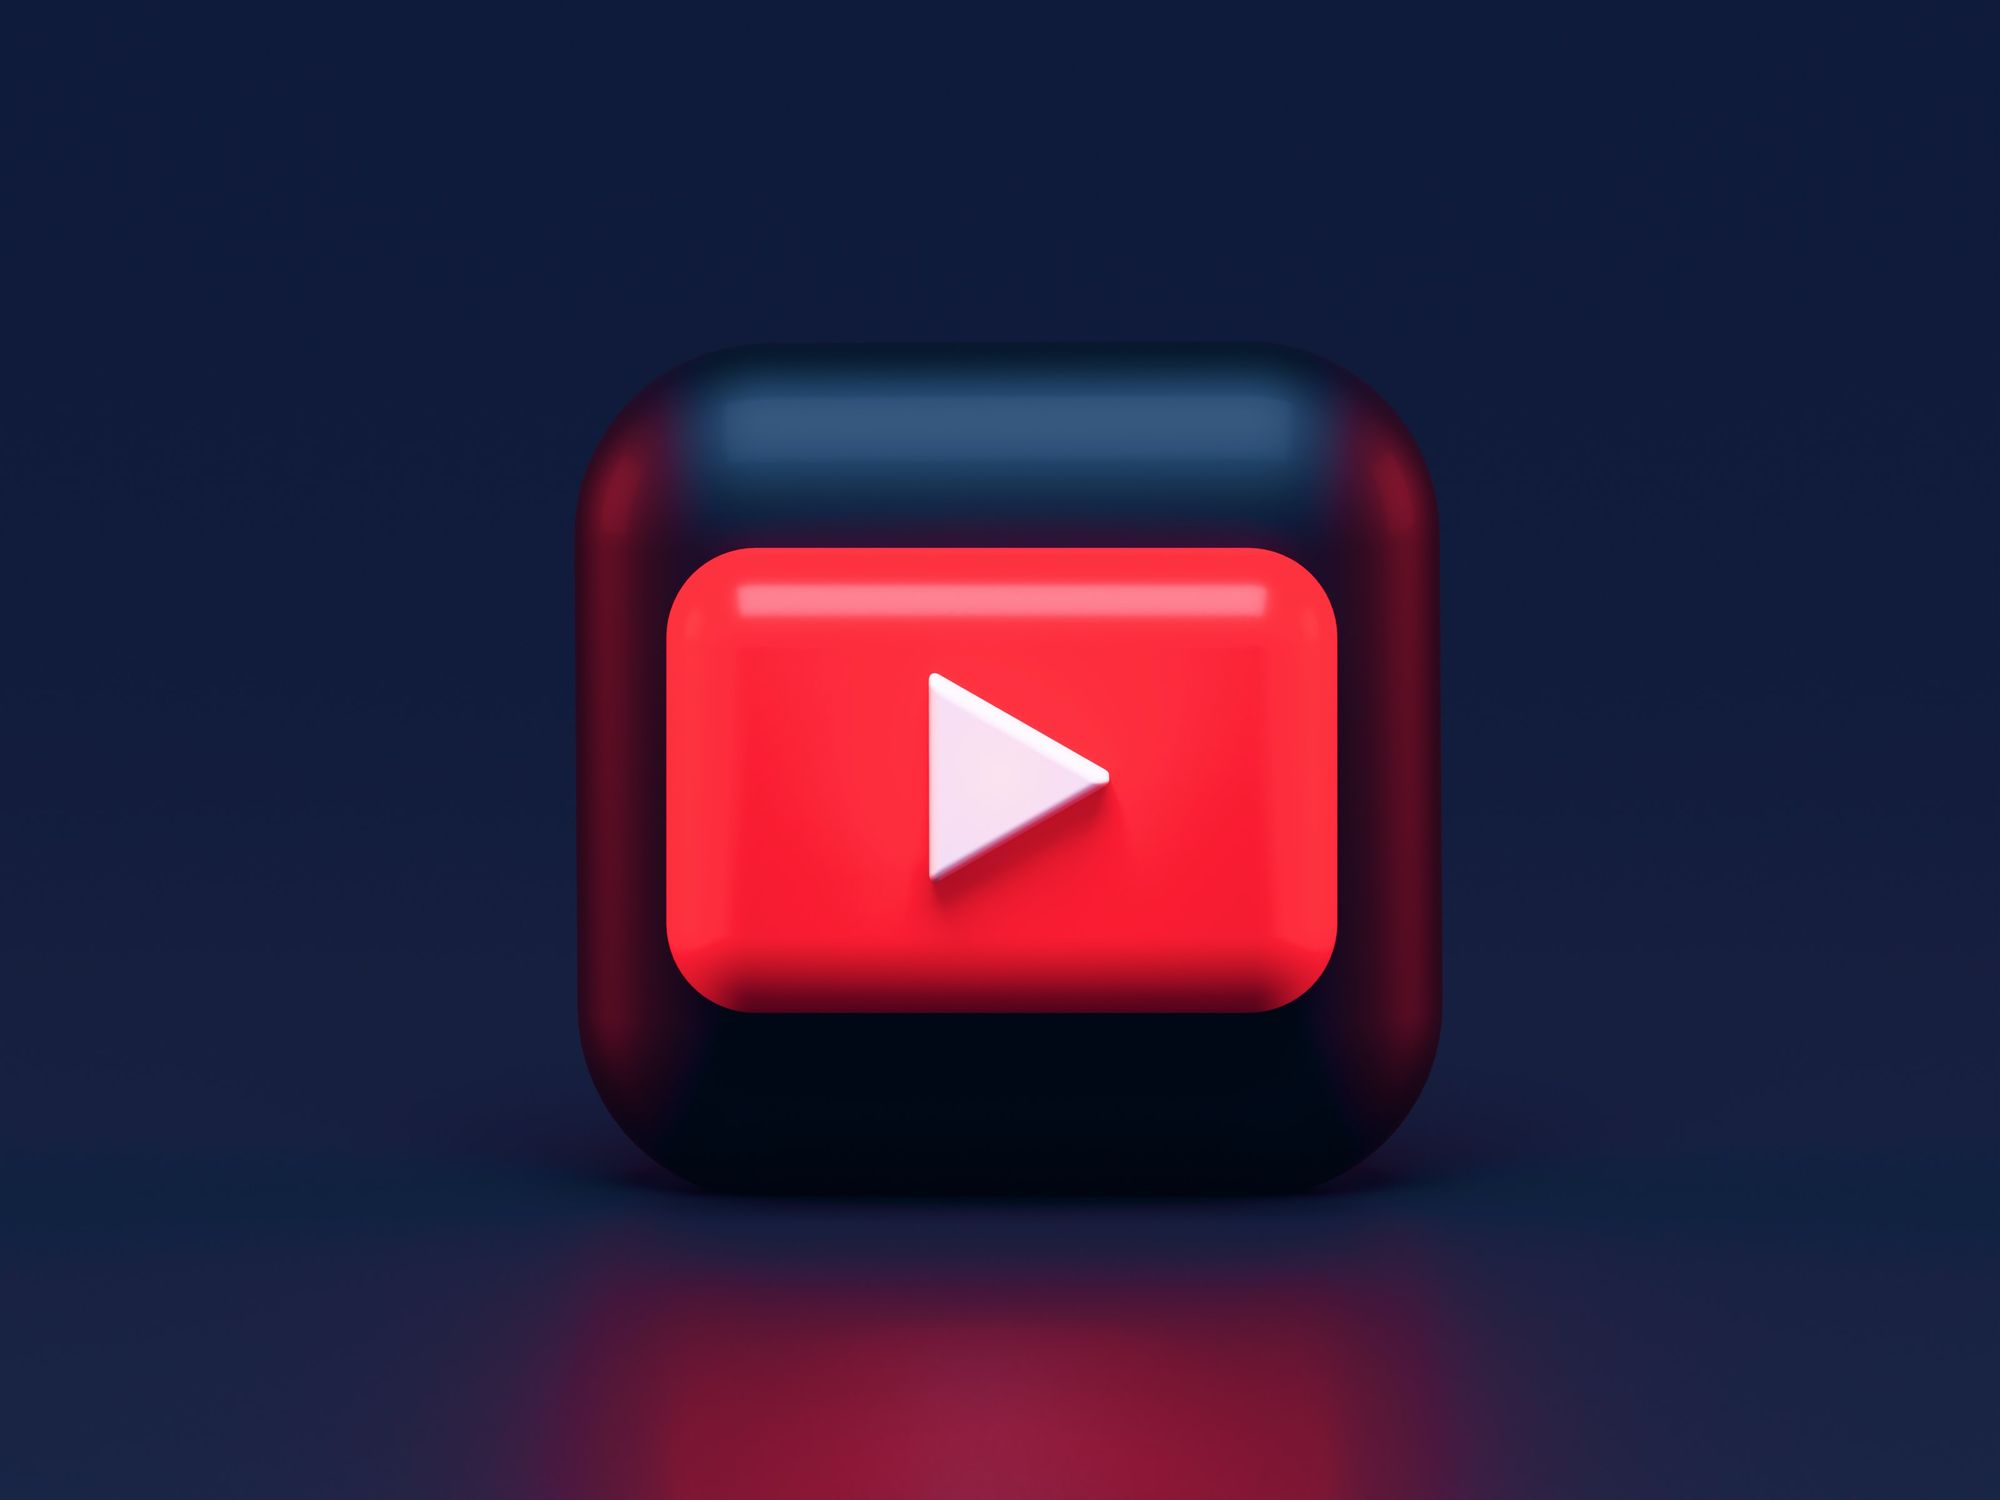 Exploration Weekly - YouTube Music es el DSP Occidental De Mayor Crecimiento / La CRB Determinará las Tarifas de Regalías por Transmisión Digital / YouTube Prueba las "Descargas Inteligentes”